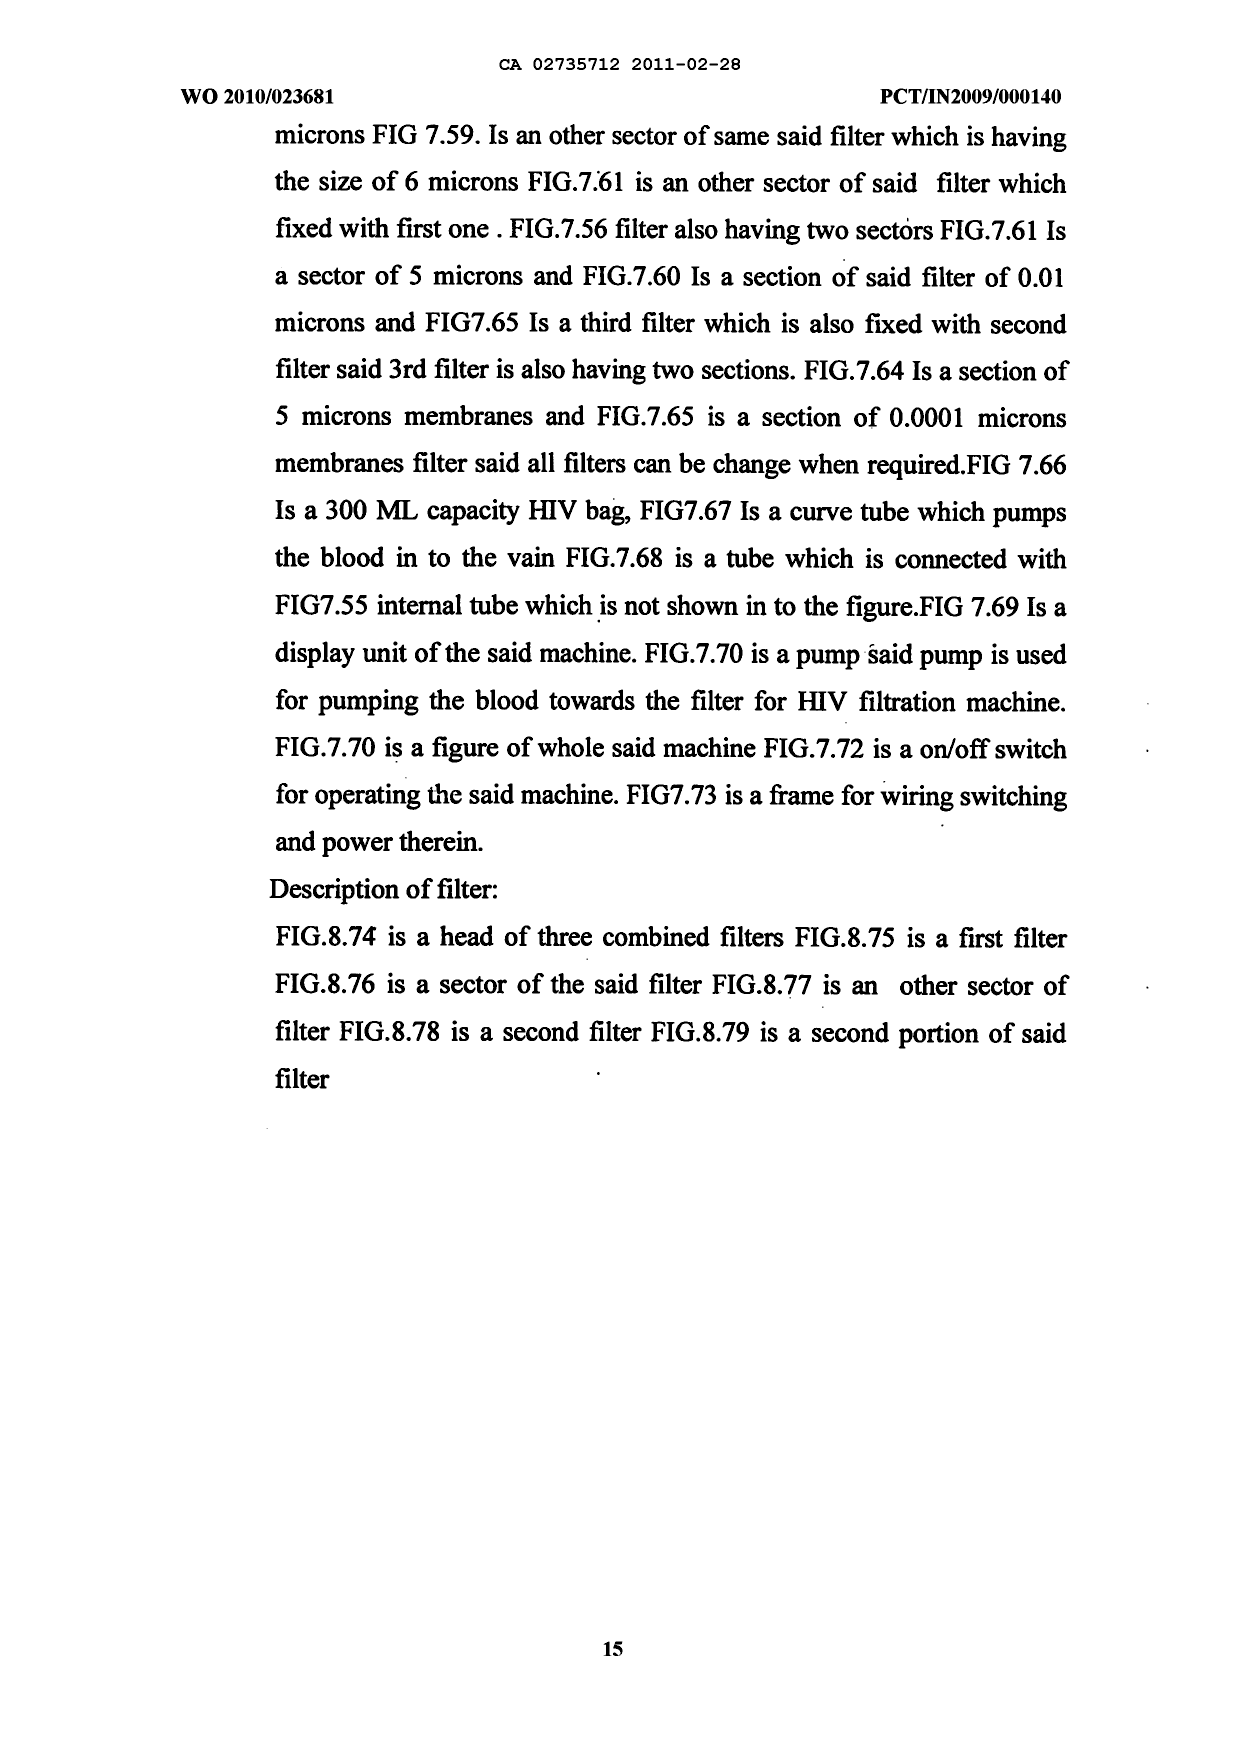 Canadian Patent Document 2735712. Description 20110228. Image 15 of 15